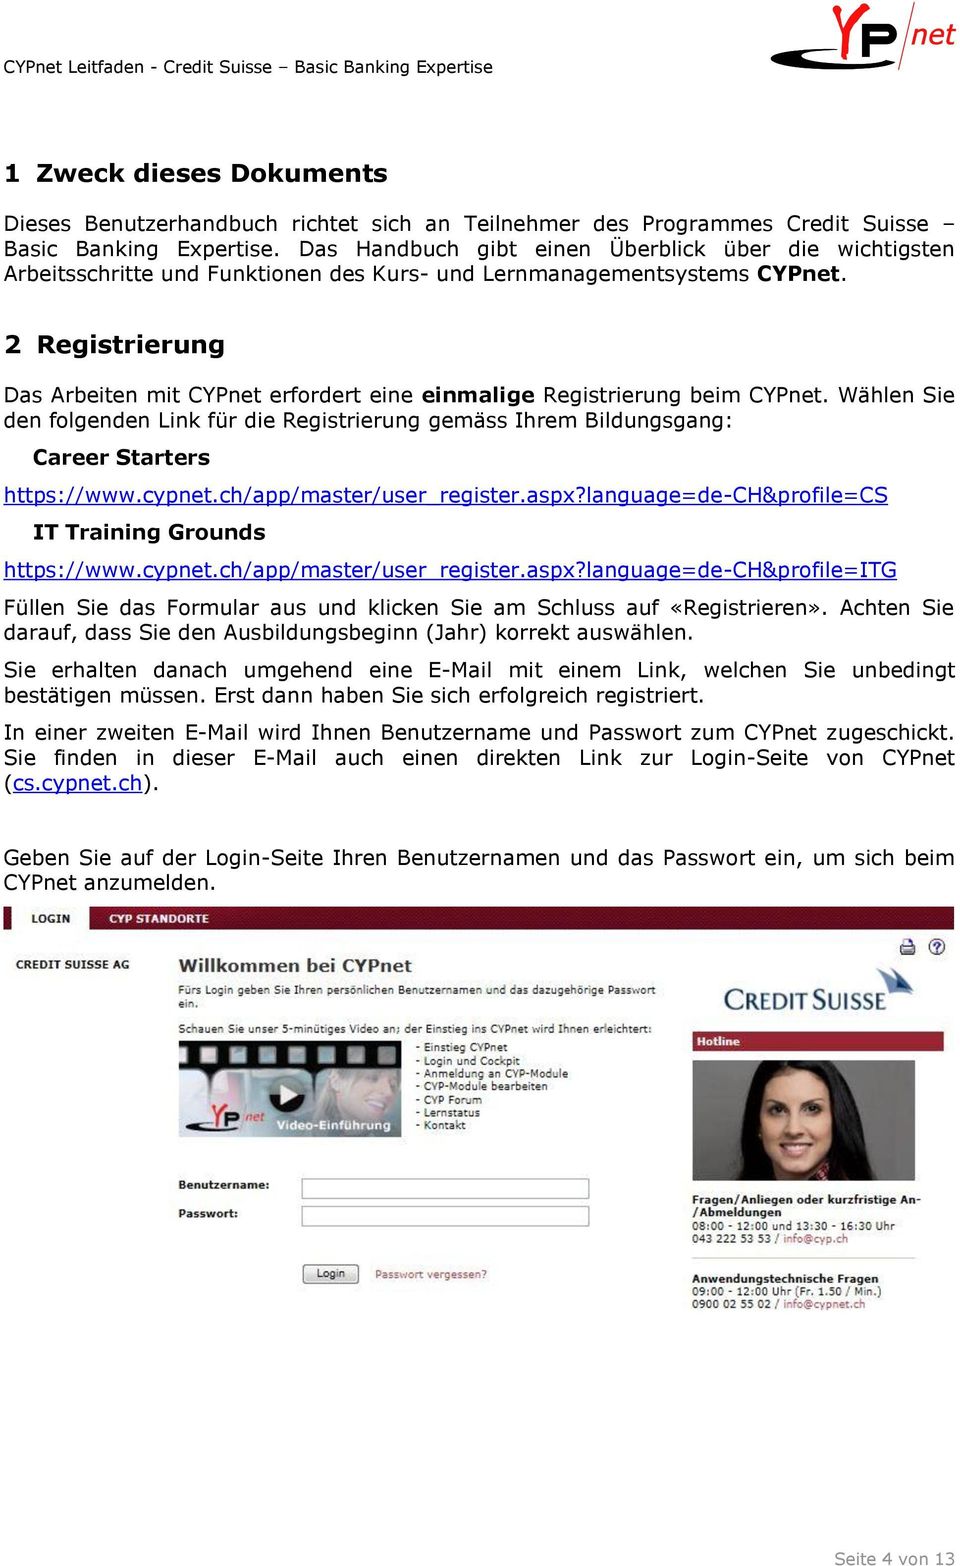 2 Registrierung Das Arbeiten mit CYPnet erfordert eine einmalige Registrierung beim CYPnet. Wählen Sie den folgenden Link für die Registrierung gemäss Ihrem Bildungsgang: Career Starters https://www.